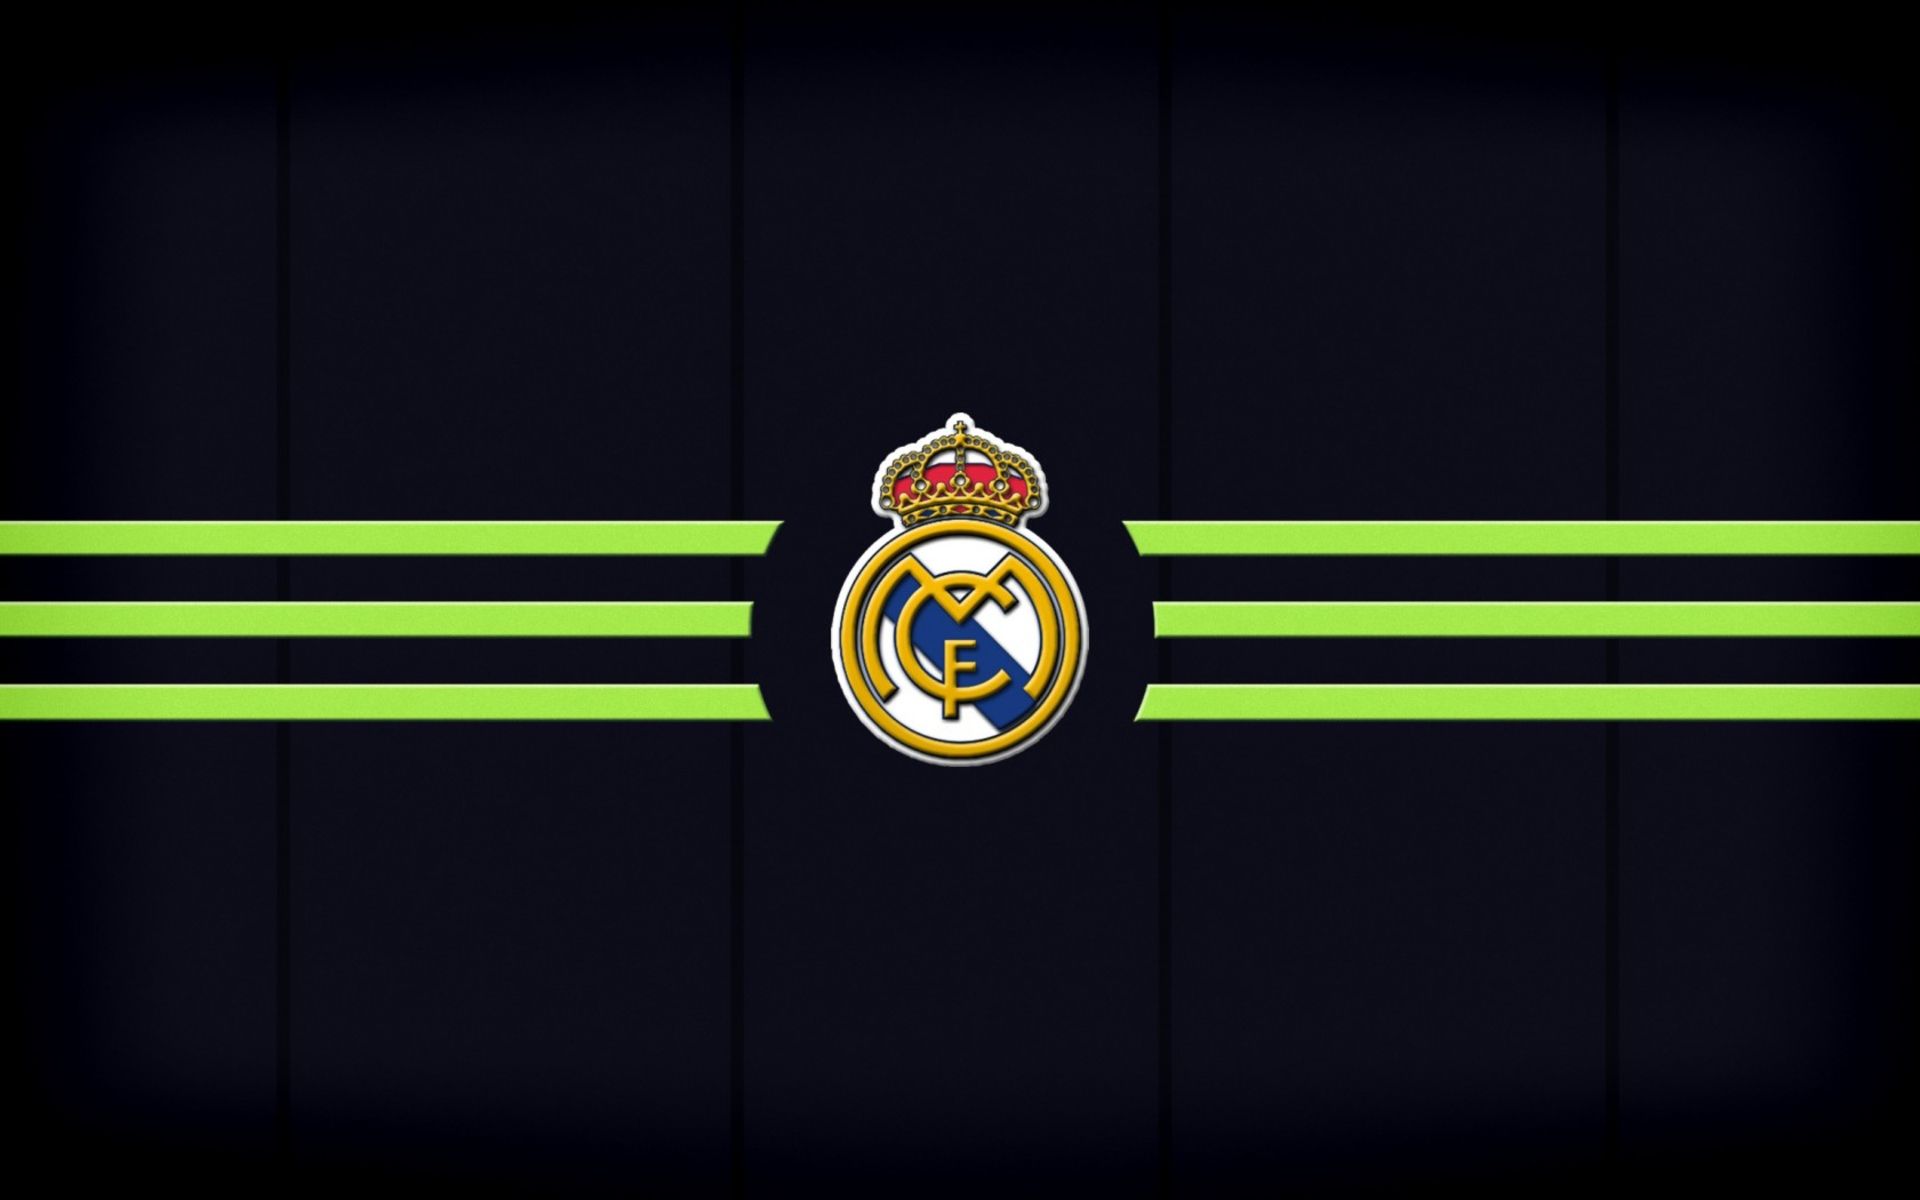 Real Madrid En La Champions Wallpaper HD. Real madrid logo wallpaper, Real madrid wallpaper, Madrid wallpaper